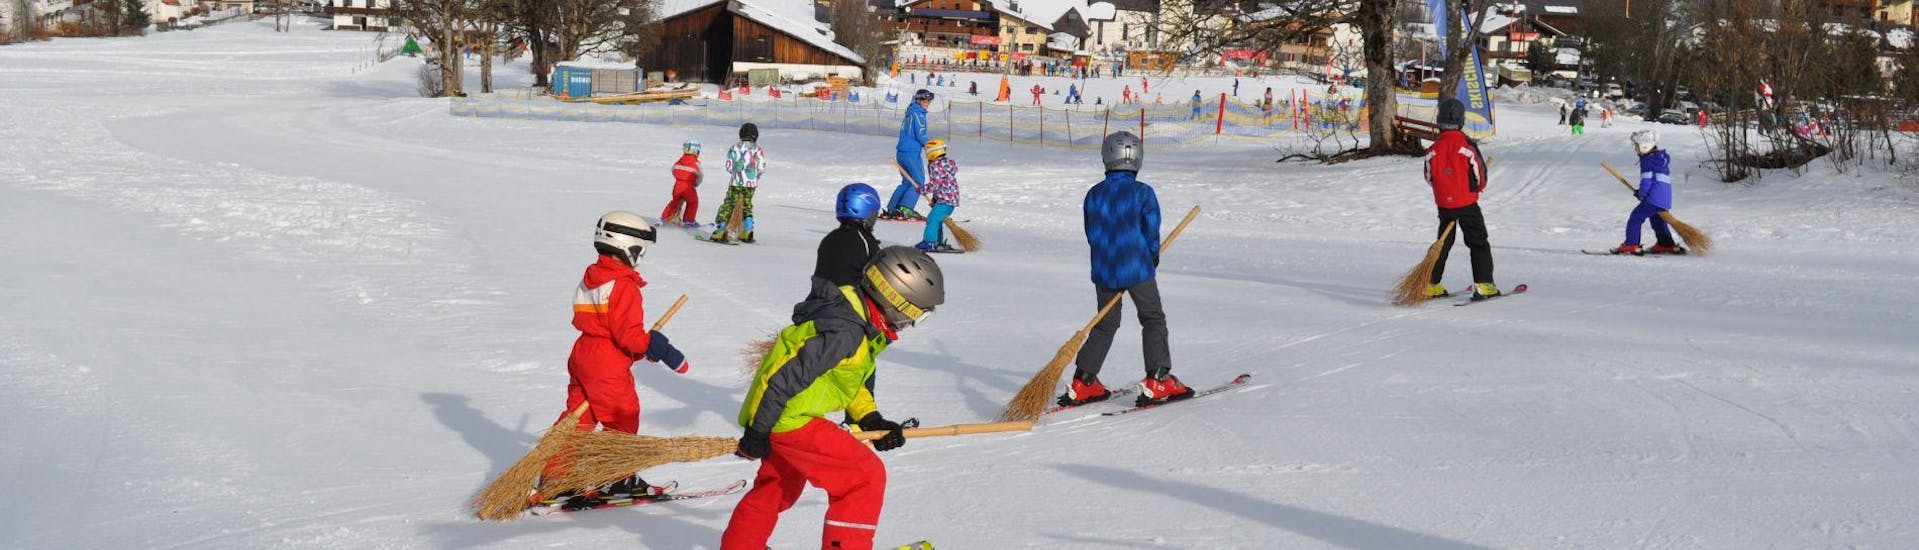 Kinderen skiën tijdens de skilessen voor kinderen voor beginners bij skischool Aktiv in Wildschönau.